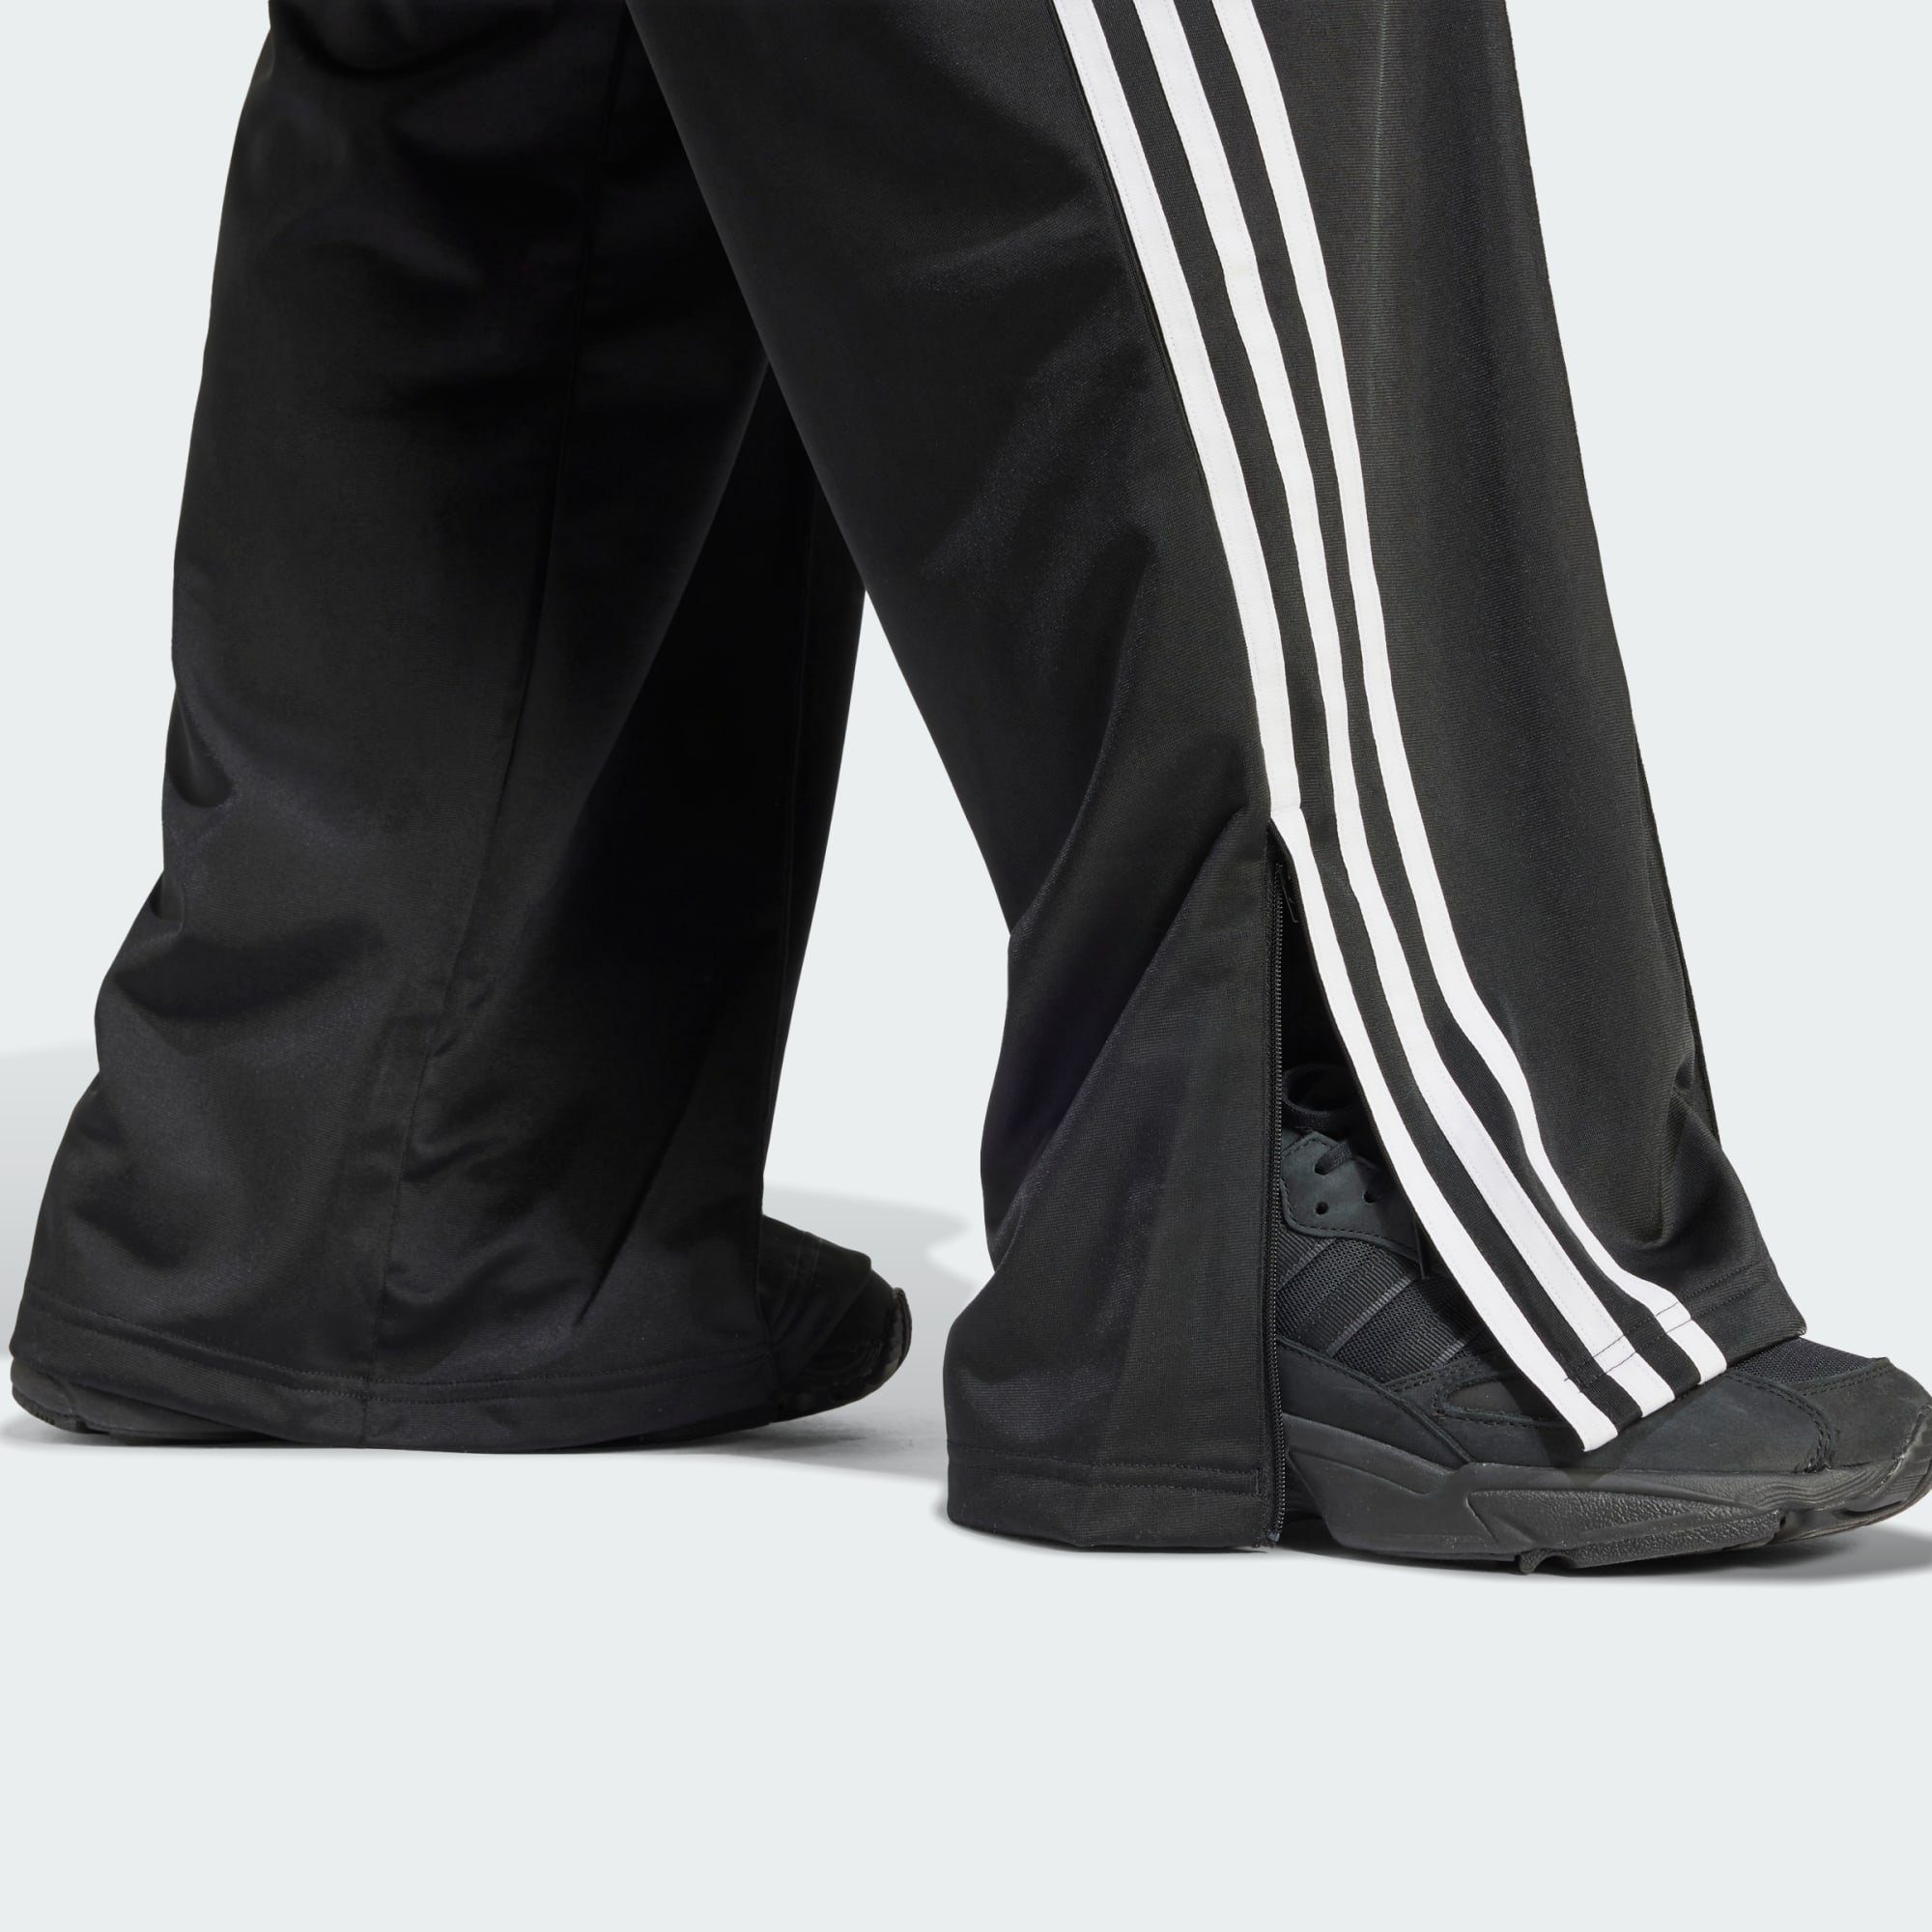 Black LOOSE TRAININGSHOSE FIREBIRD Originals adidas Jogginghose